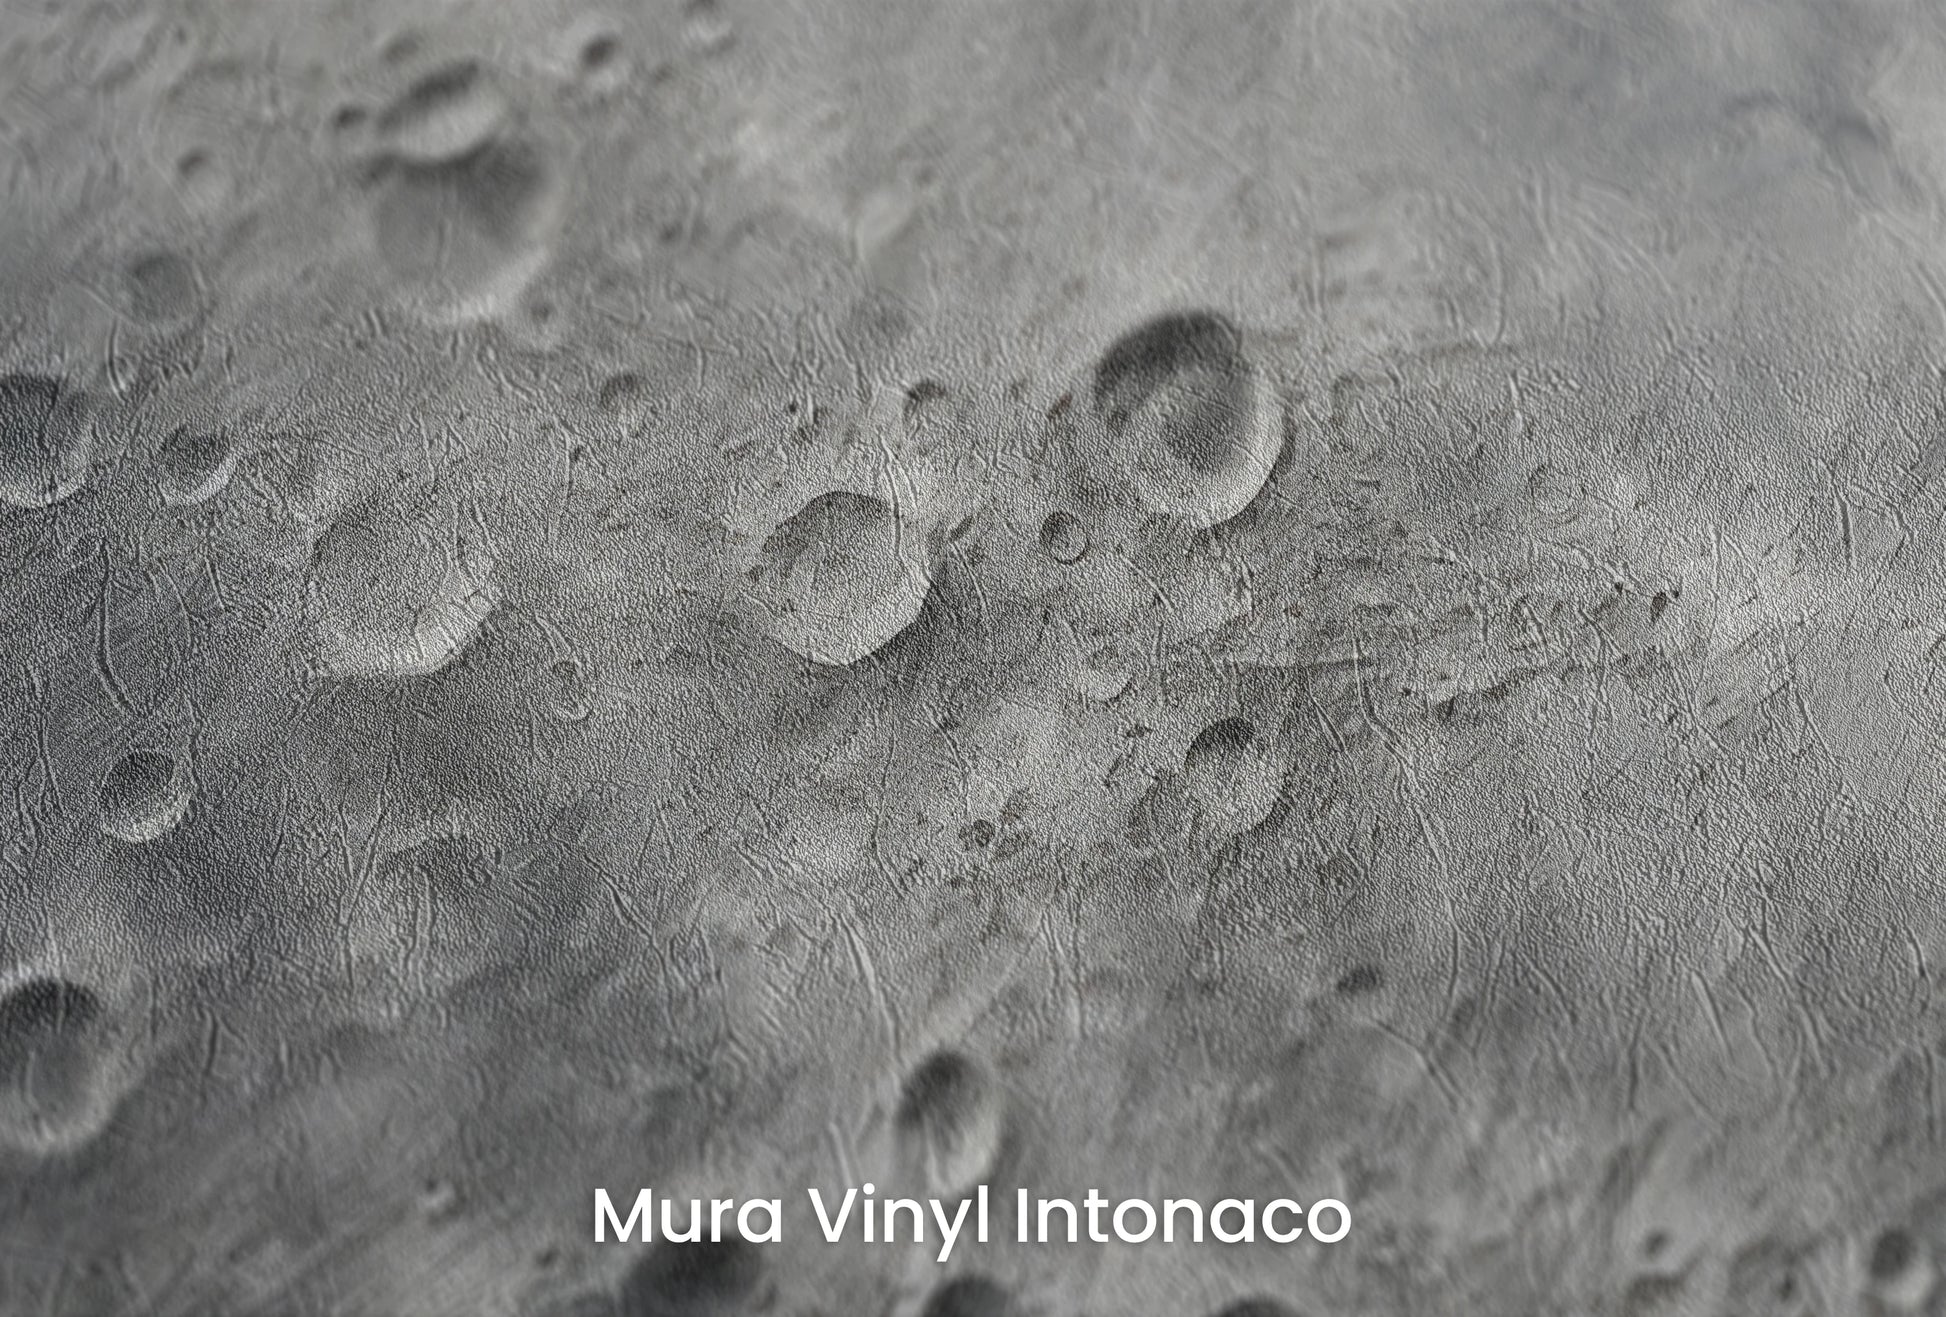 Zbliżenie na artystyczną fototapetę o nazwie Moon's Monochrome 2 na podłożu Mura Vinyl Intonaco - struktura tartego tynku.